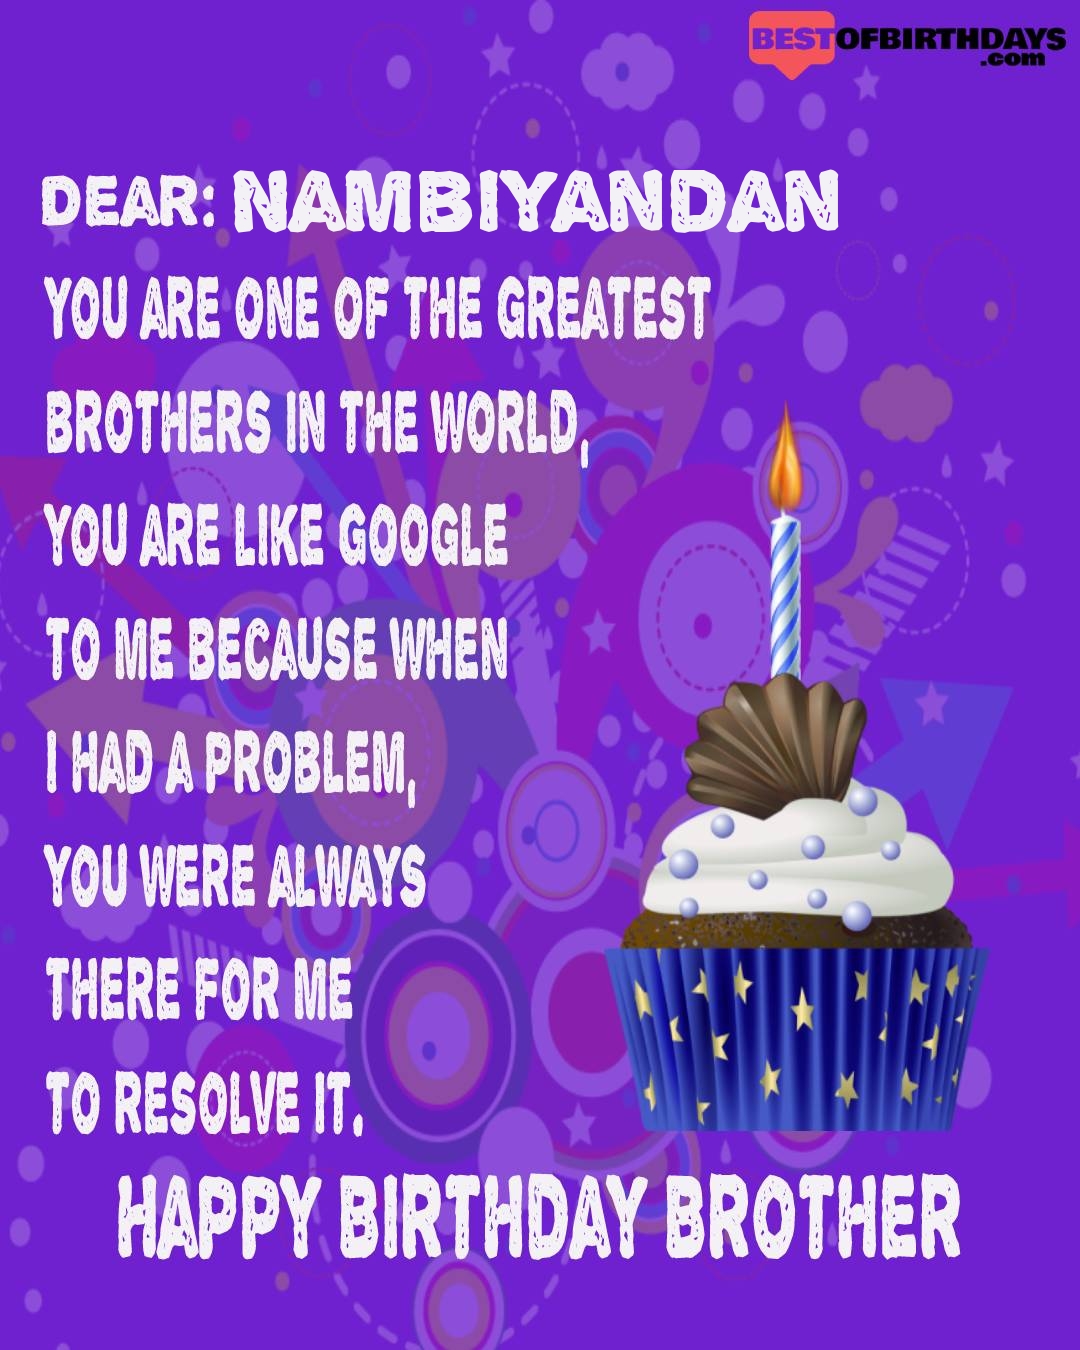 Happy birthday nambiyandan bhai brother bro